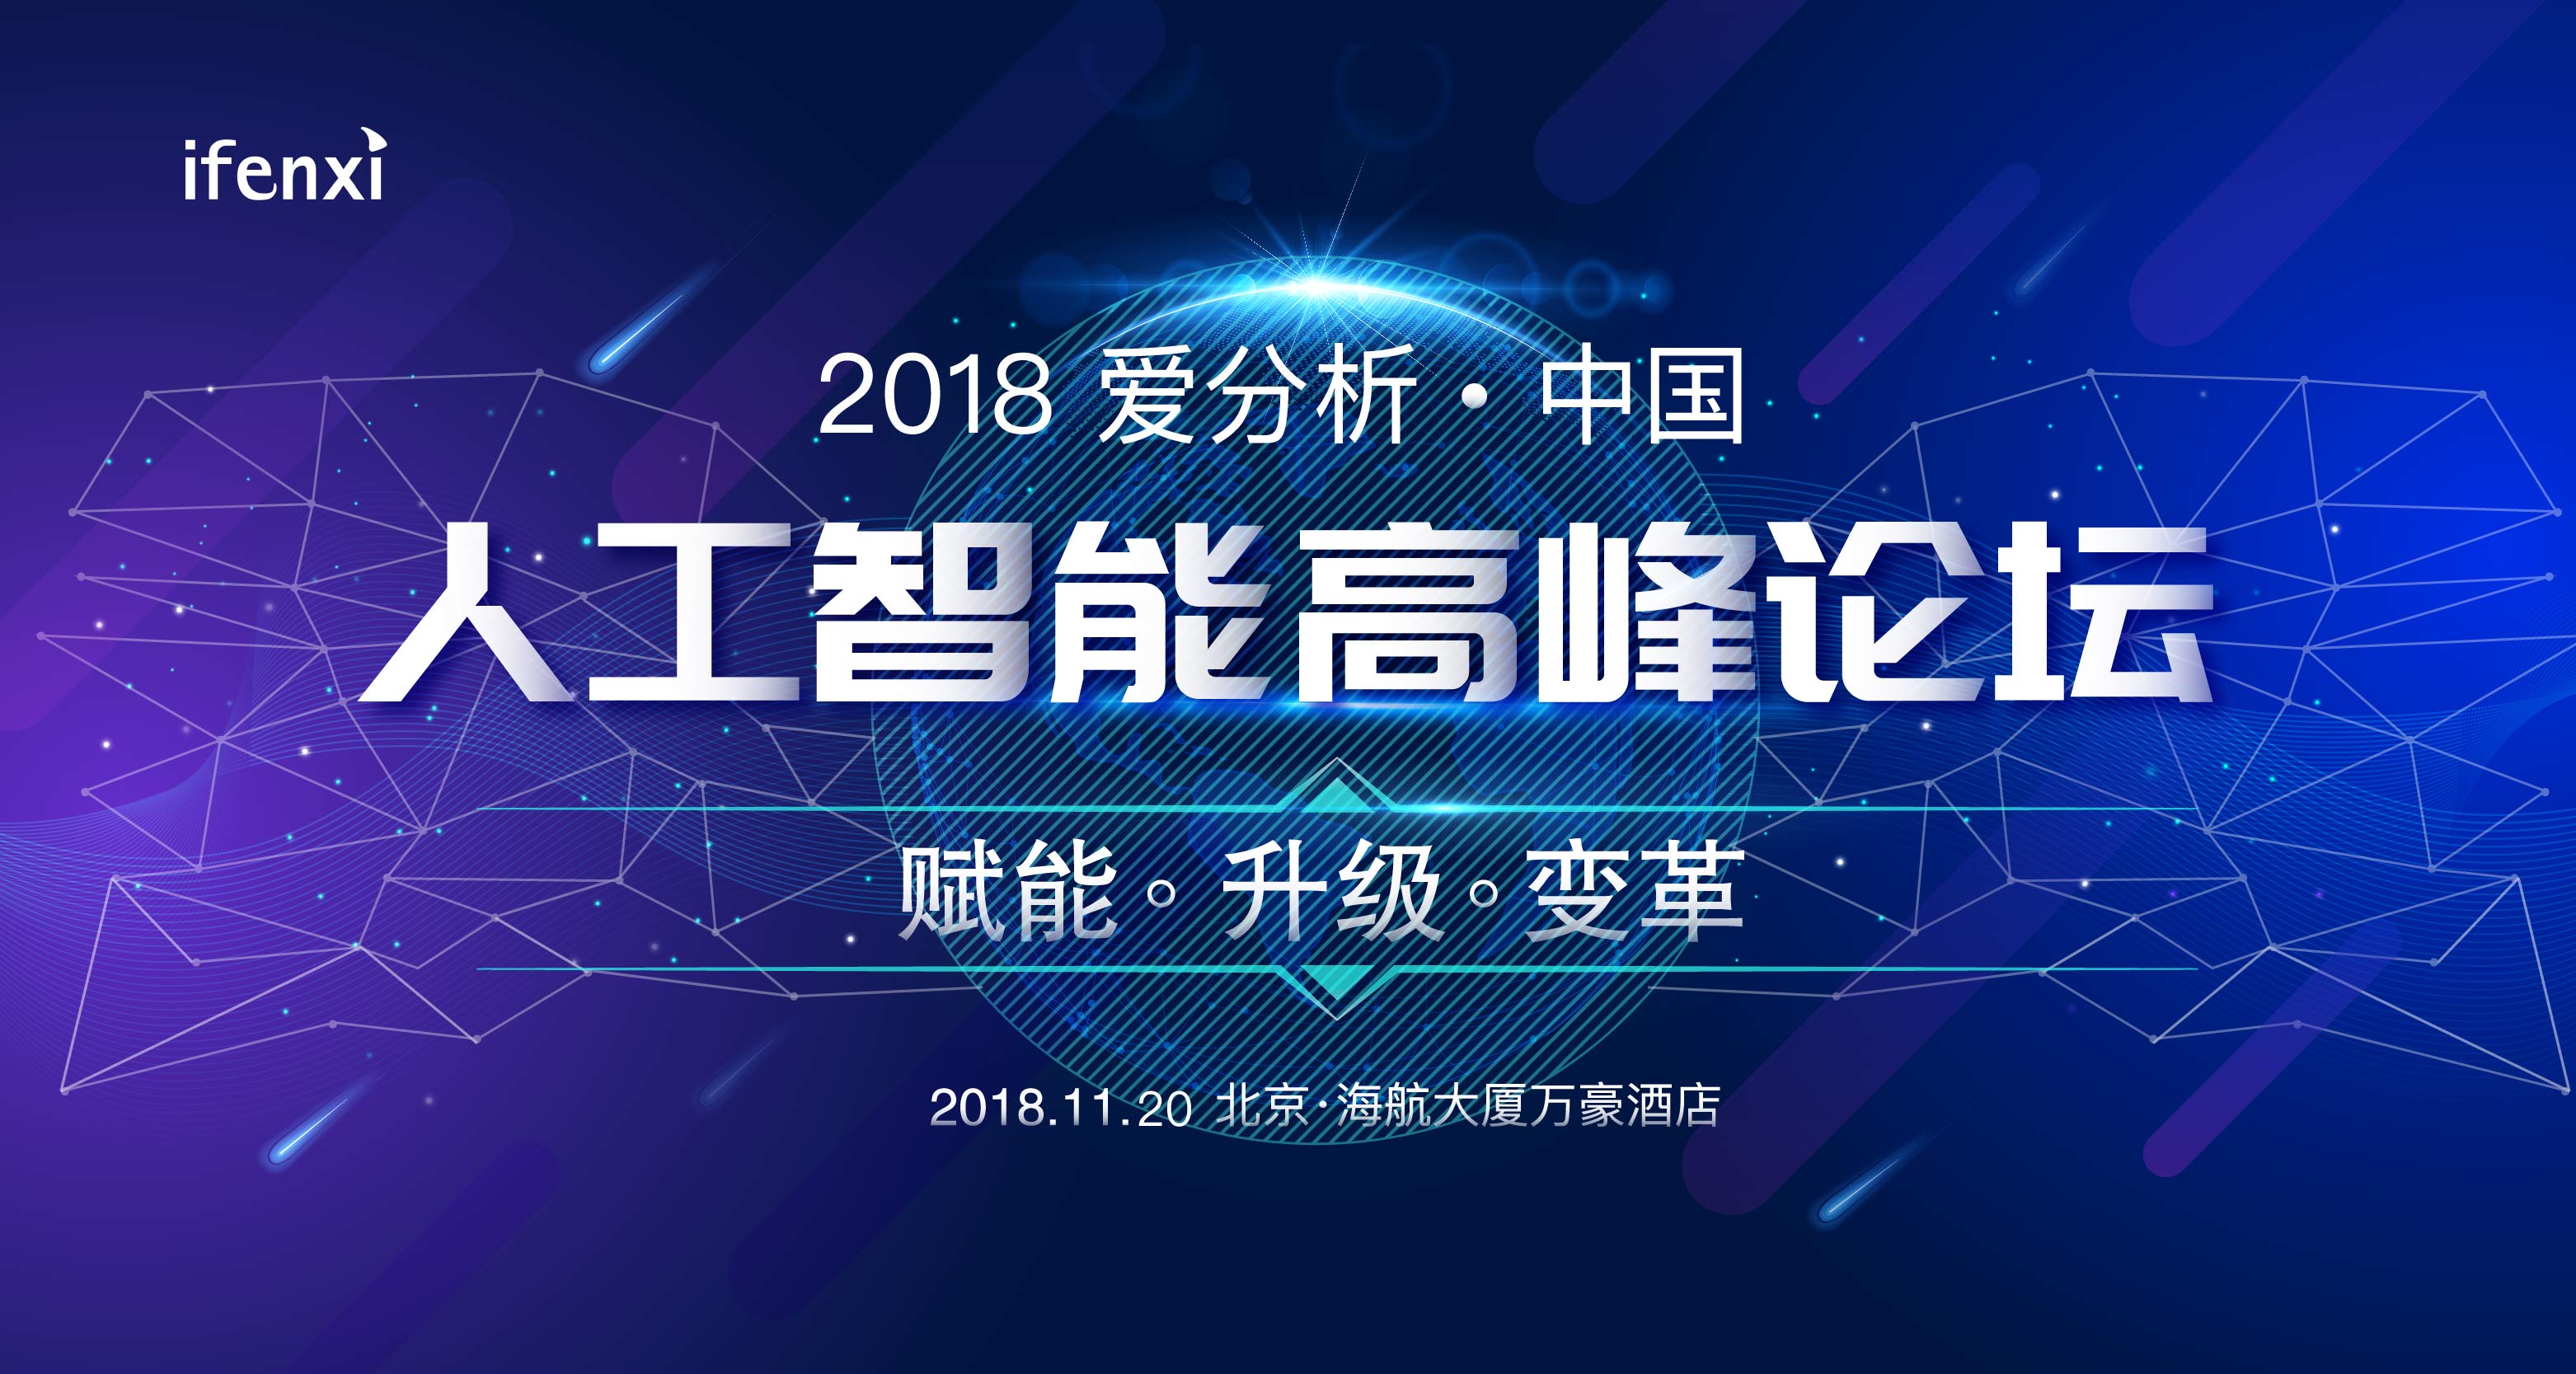 2018 爱分析·中国人工智能高峰论坛将于11月20日举办